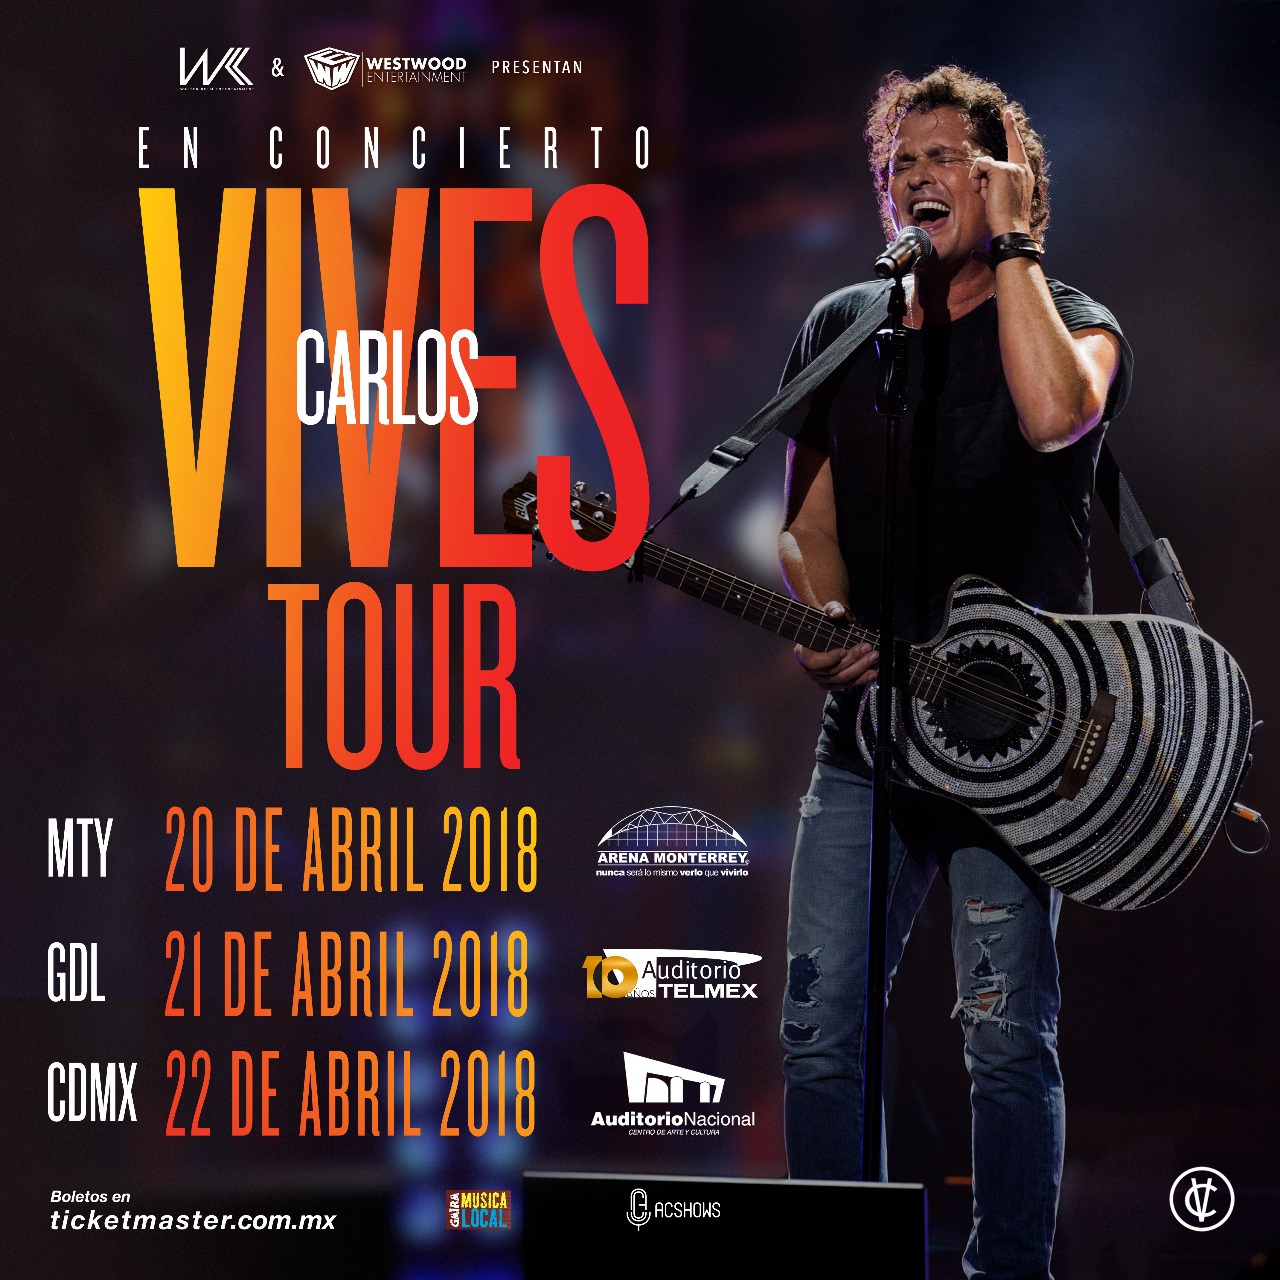 Concierto de Carlos Vives, Vives Tour, en Monterrey, Nuevo León, México, Martes, 20 de marzo de 2018